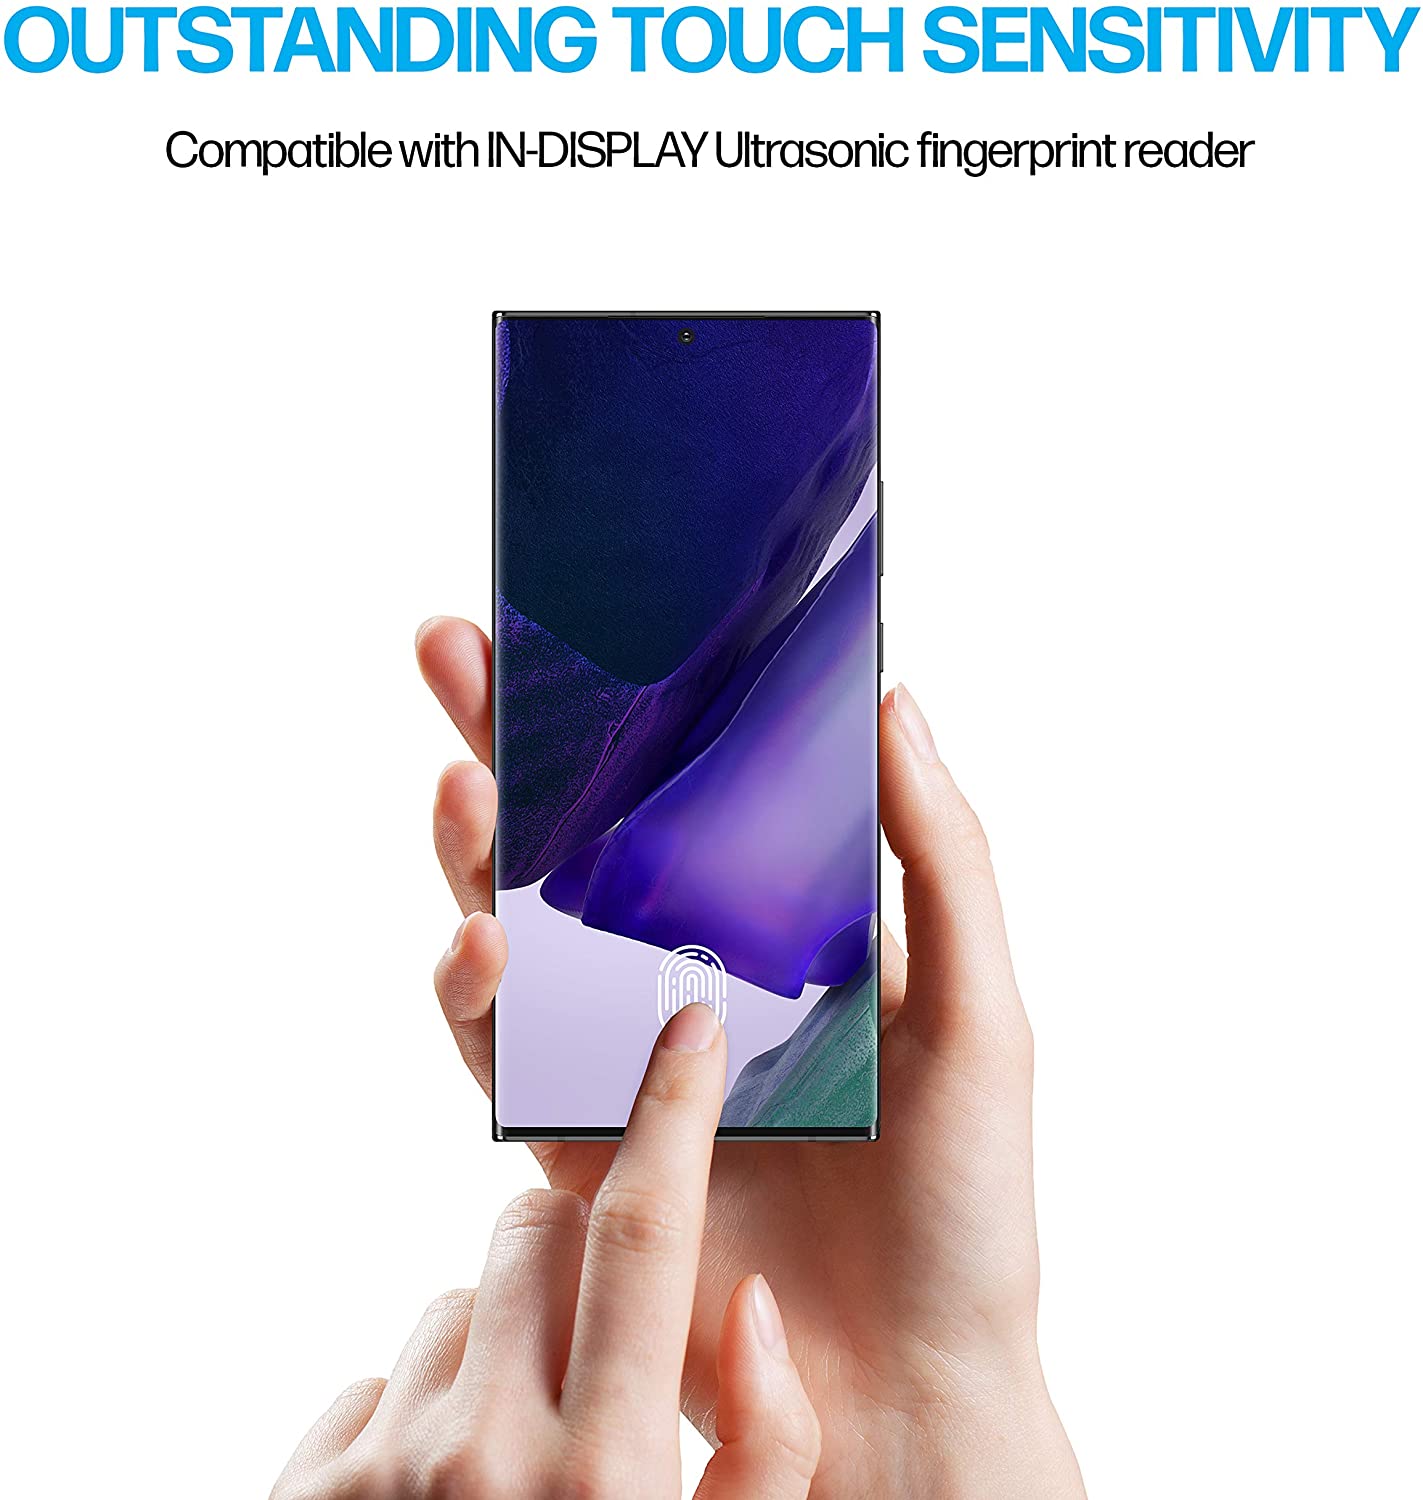 Power Theory Schutzfolie für Samsung Galaxy Note 20 ULTRA [2 Stück]